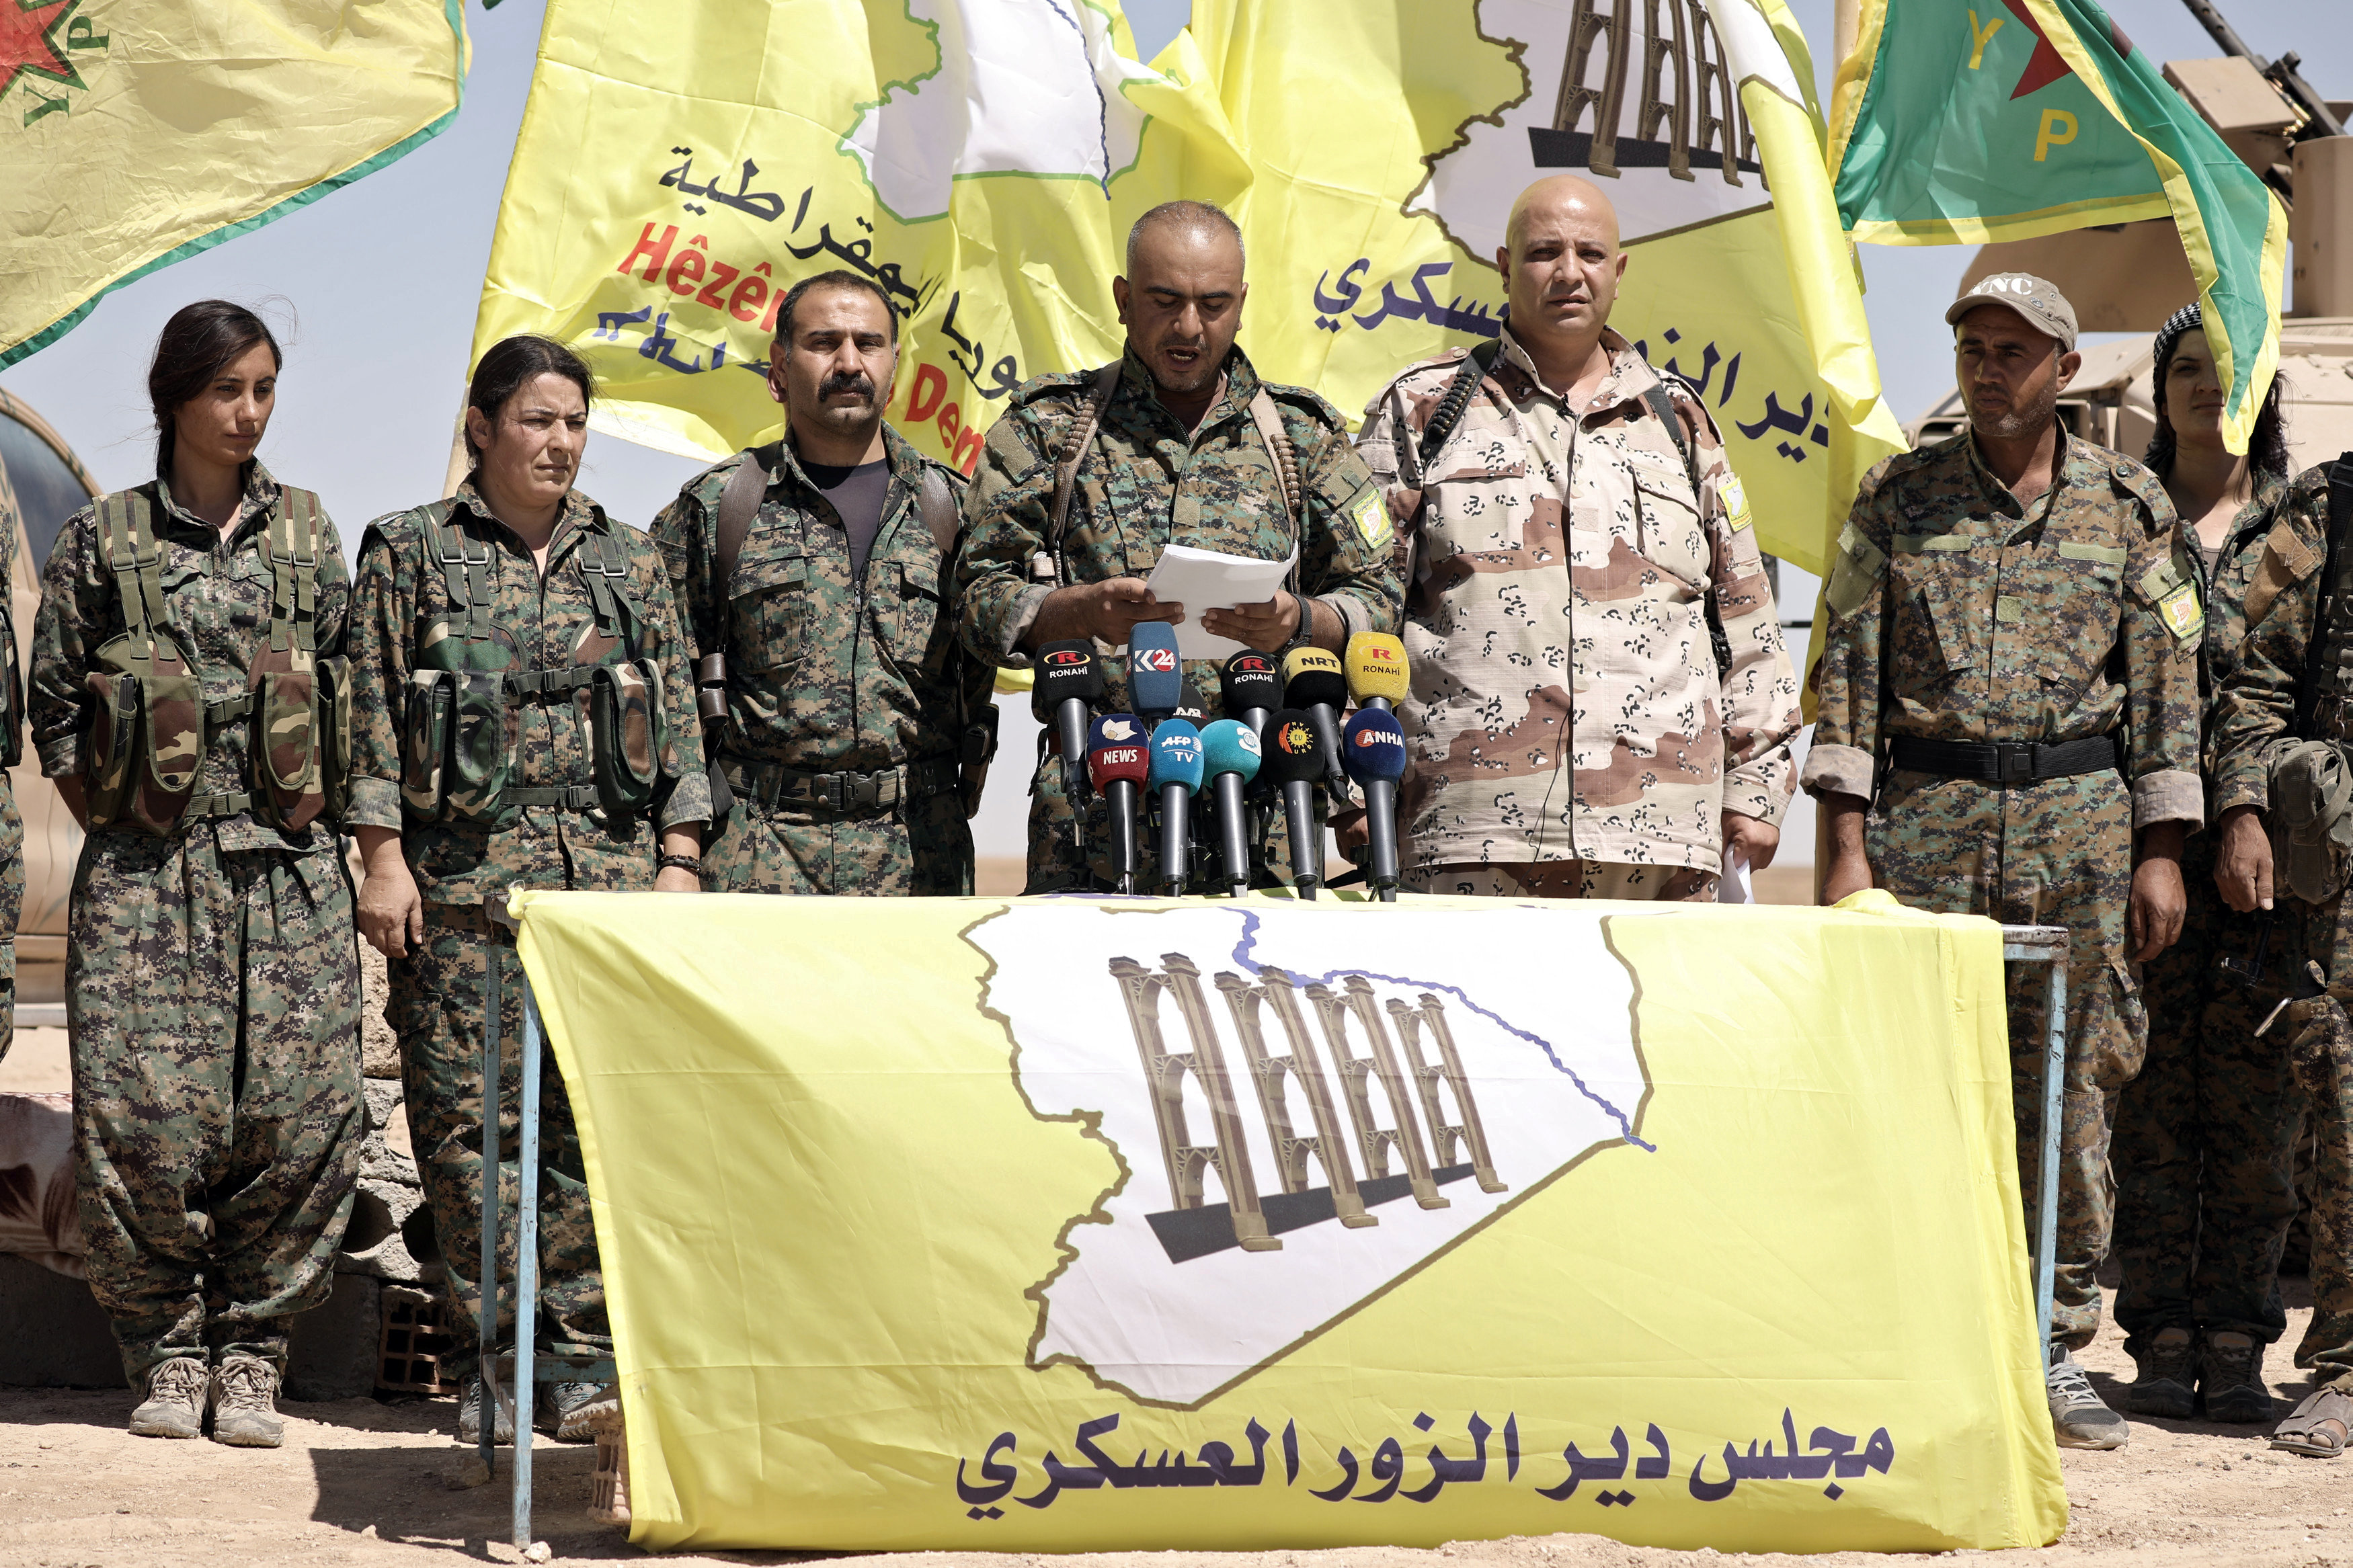 رئيس مجلس دير الزور العسكرى يلقى بيان العملية العسكرية فى دير الزور